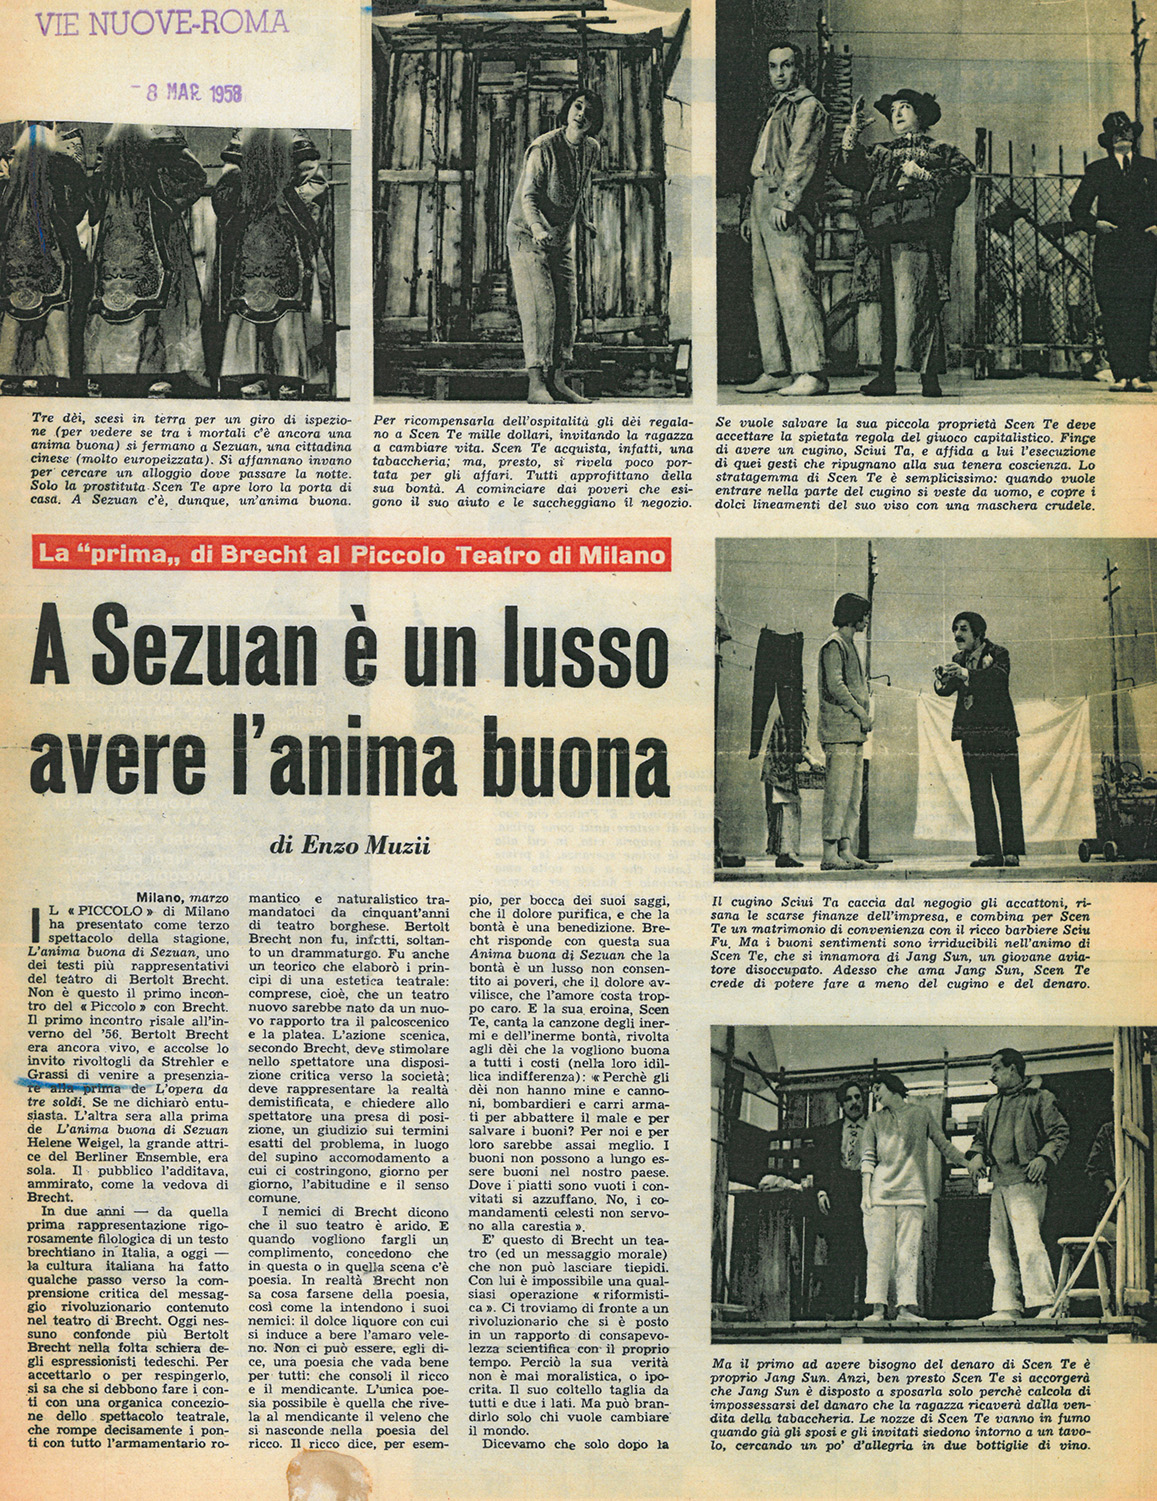 “Vie Nuove”, 8 marzo 1958 - Archivio Piccolo Teatro di Milano 